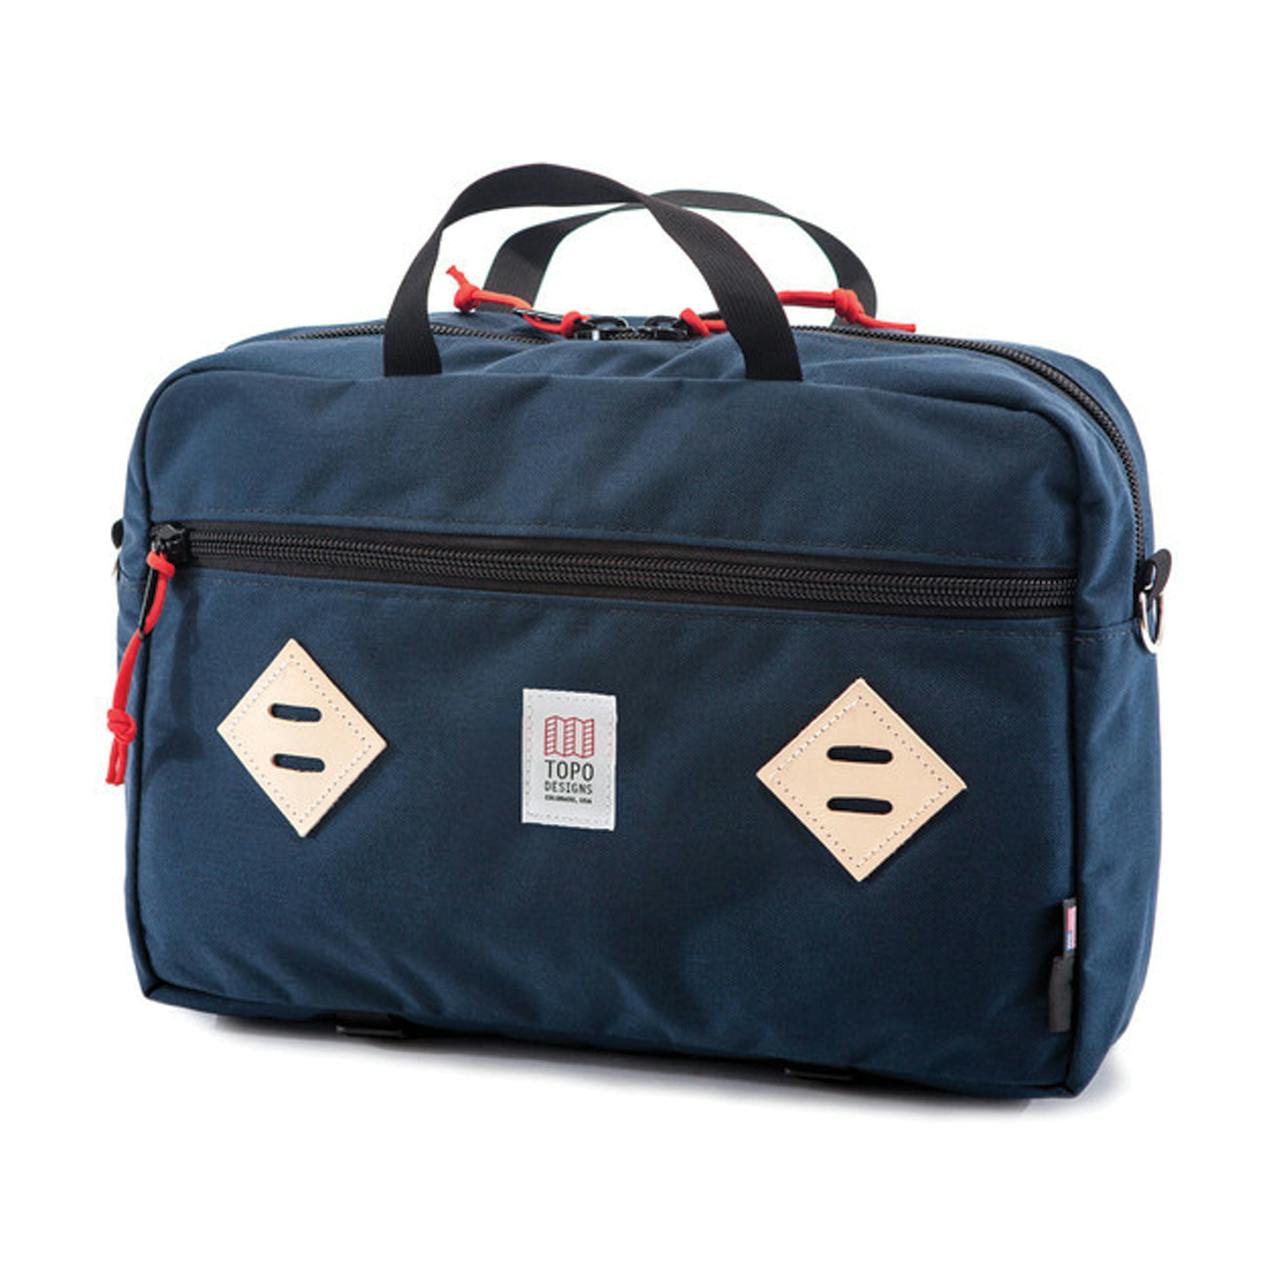 Topo Designs Mountain Briefcase